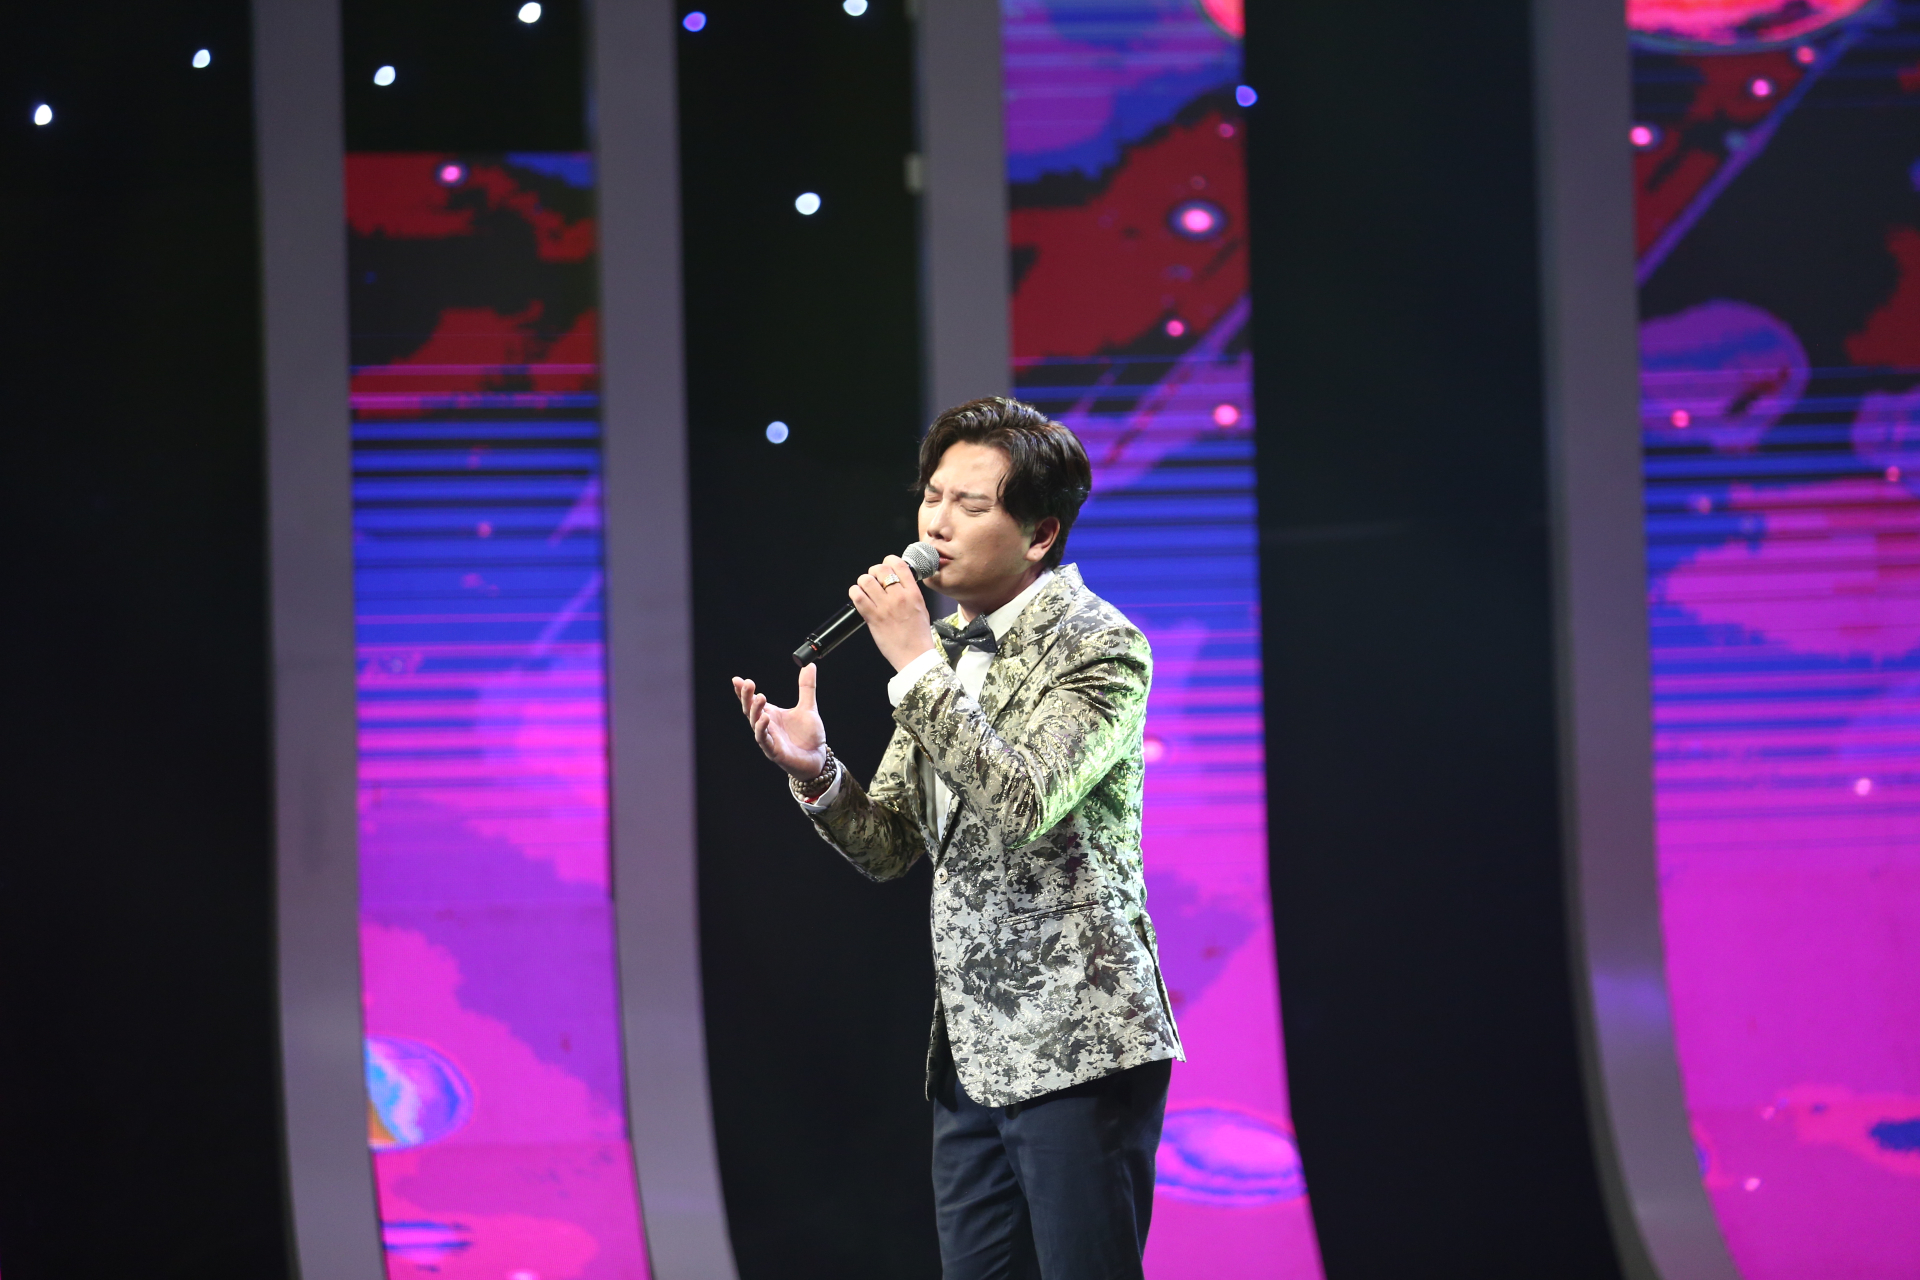 Bá Thắng cũng từng mời người mẹ nghệ sĩ của mình phụ diễn trong một cuộc thi nhưng chưa một lần nào anh đứng trên sân khấu hát tặng cha mẹ mình.